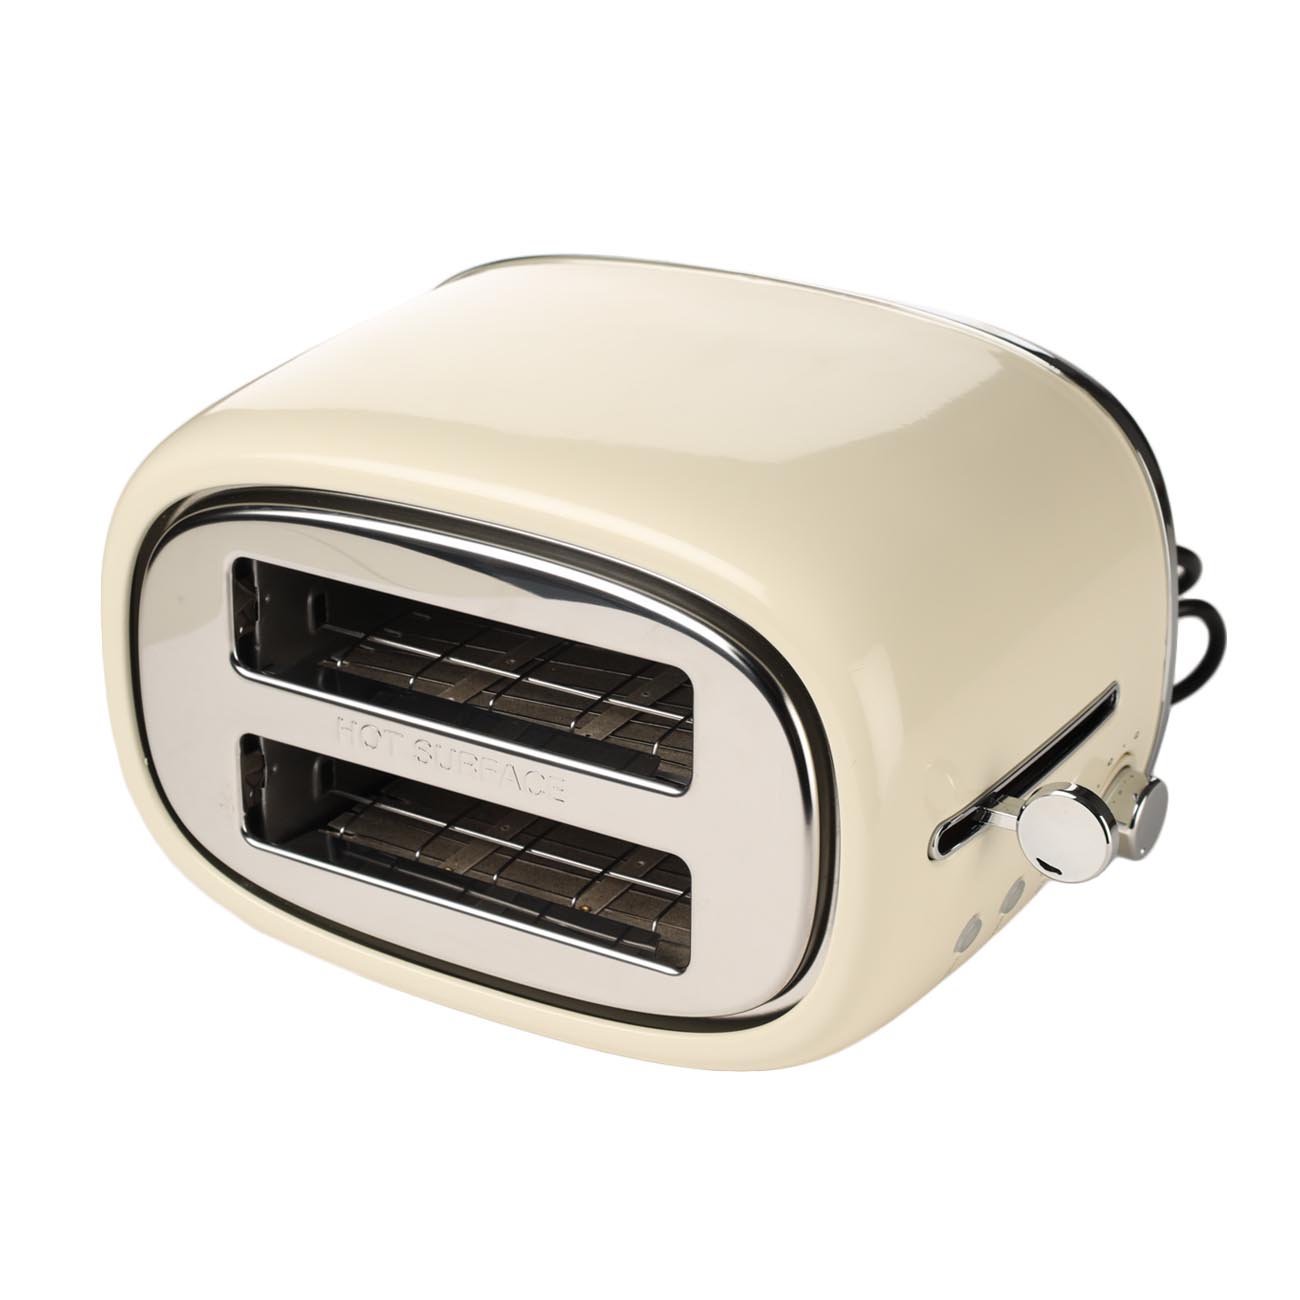 Тостер электрический, 730-870 Вт, 6 режимов, сталь/пластик, бежевый, Vintage kitchen изображение № 6